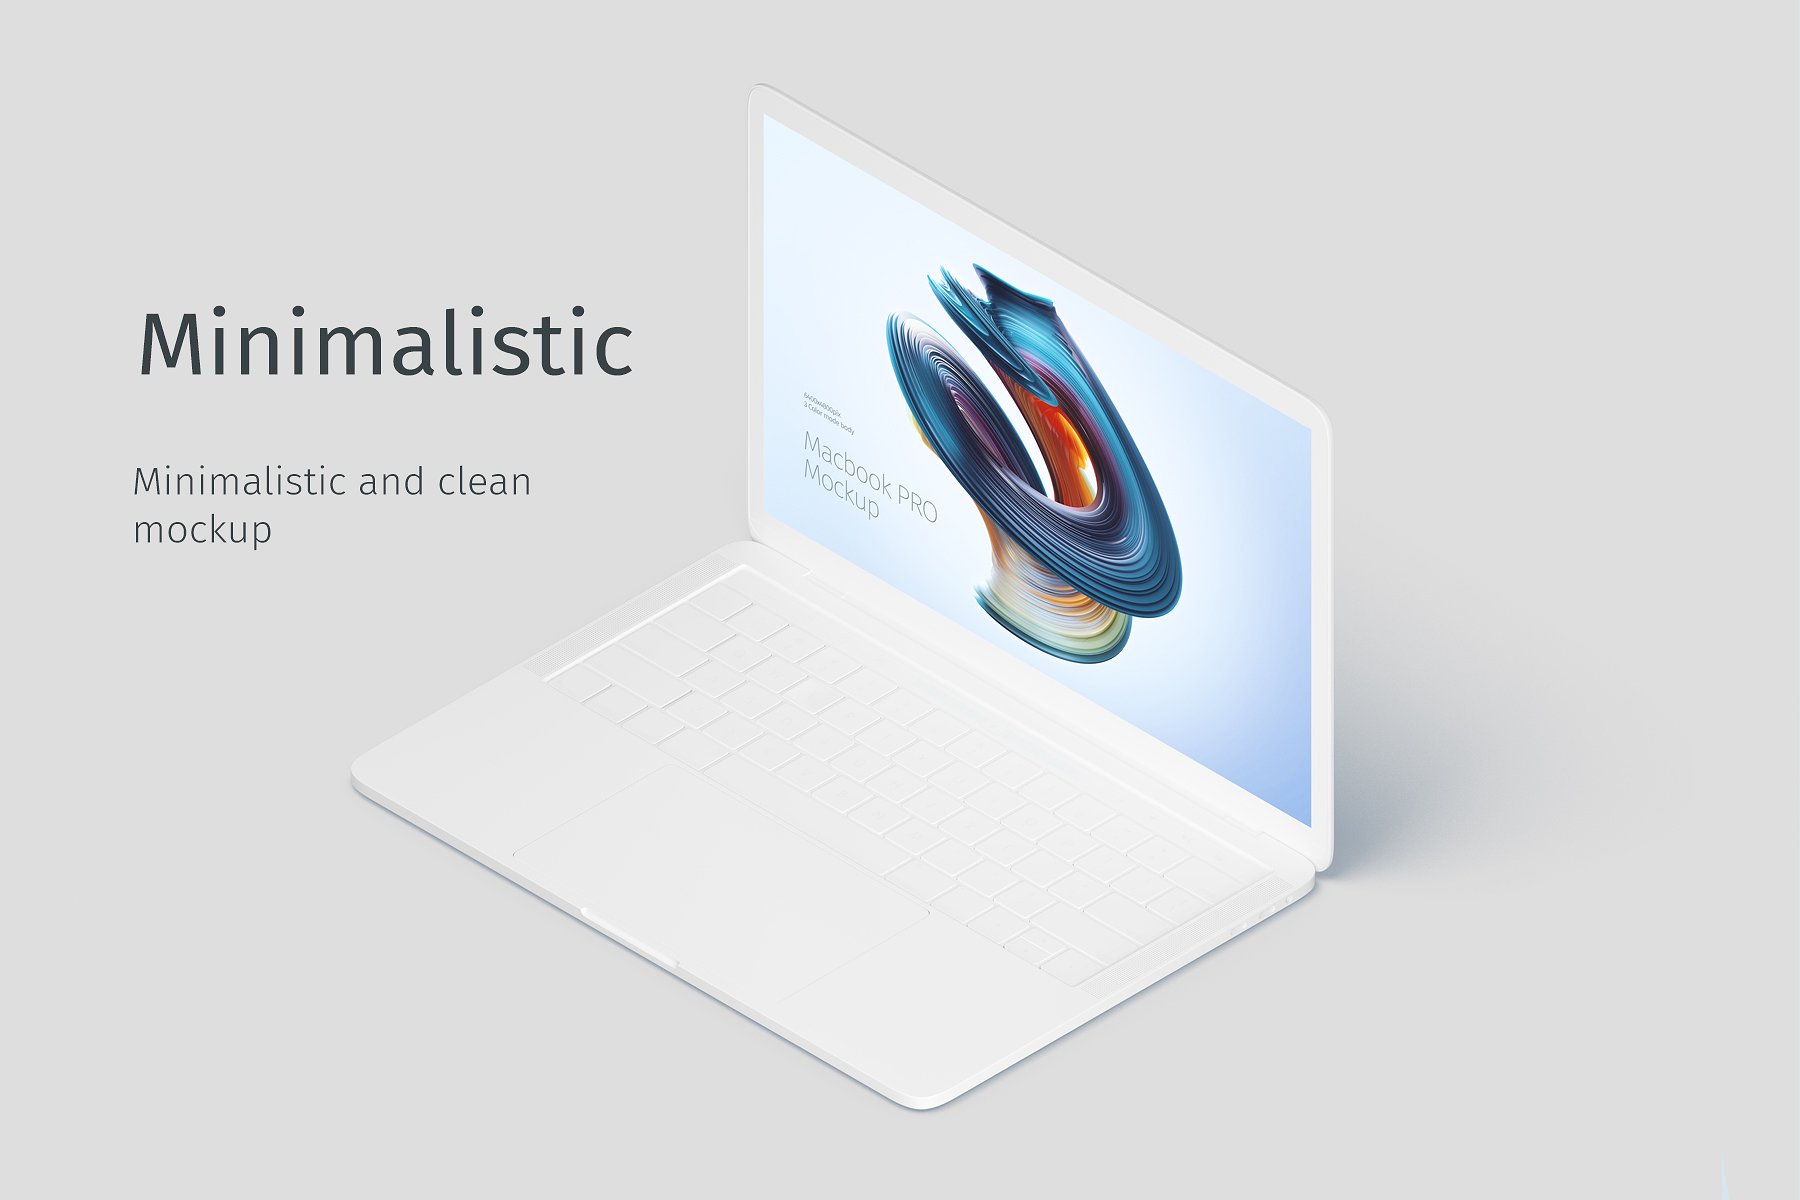 精美的MacBook Pro的创意样机 Macbook Pro Creative Mockup插图2